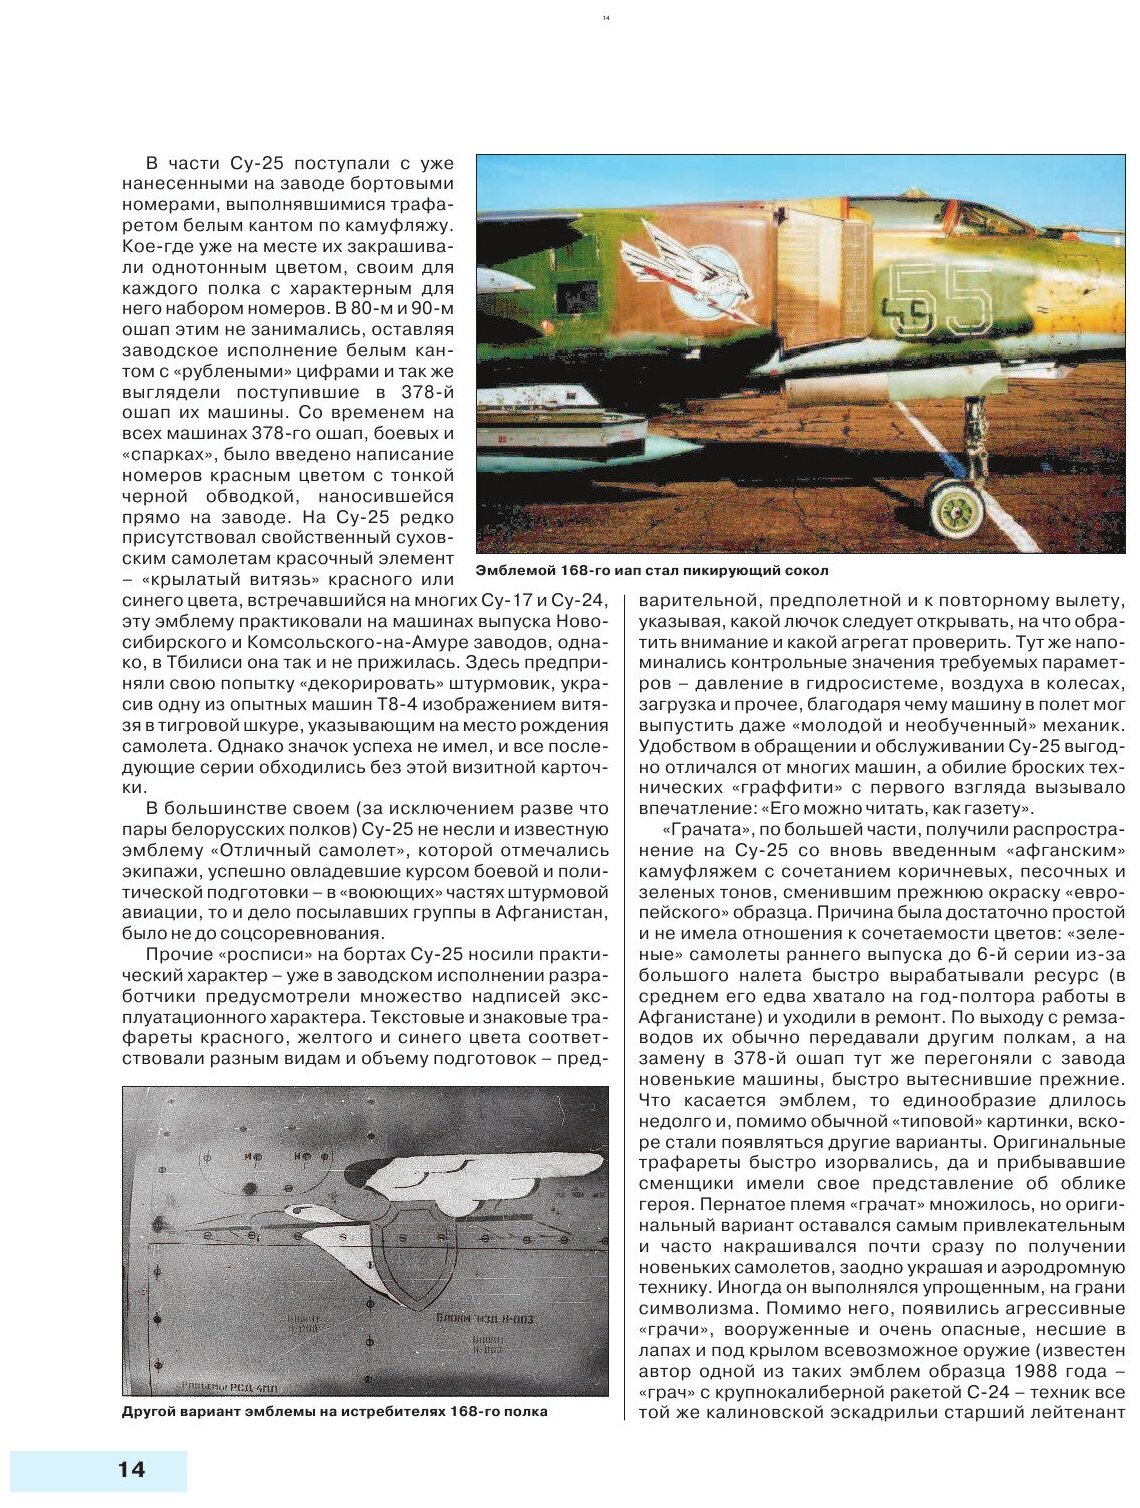 Камуфляж и бортовые эмблемы авиатехники советских ВВС в афганской кампании - фото №7